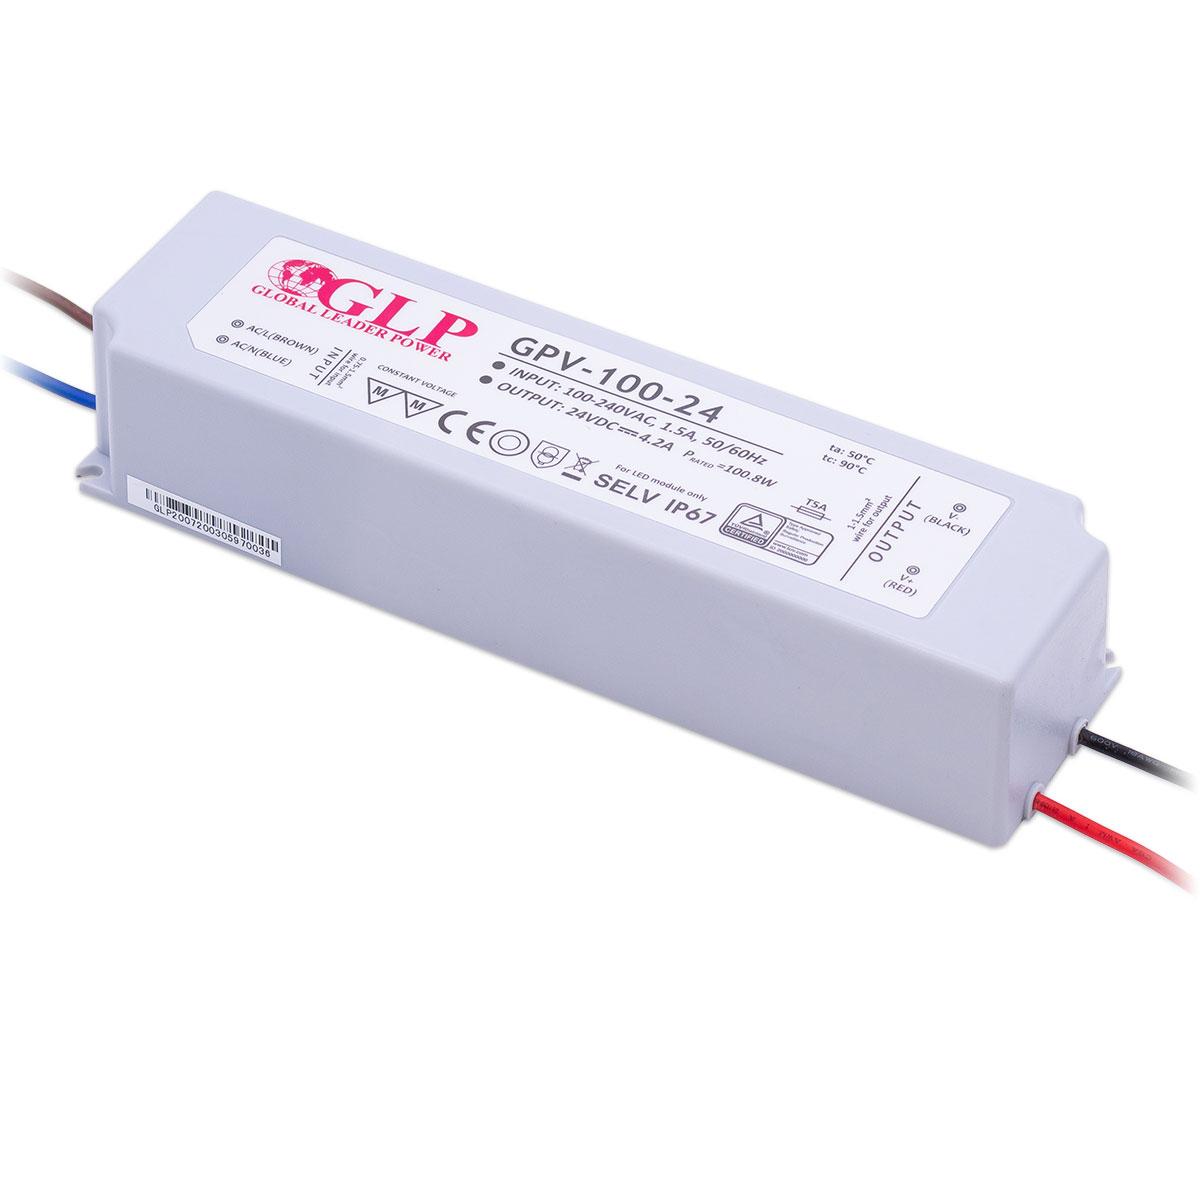 GLP GPV-100-24 LED Netzteil 100W 24V 4.2A IP67 Schaltnetzteil CV